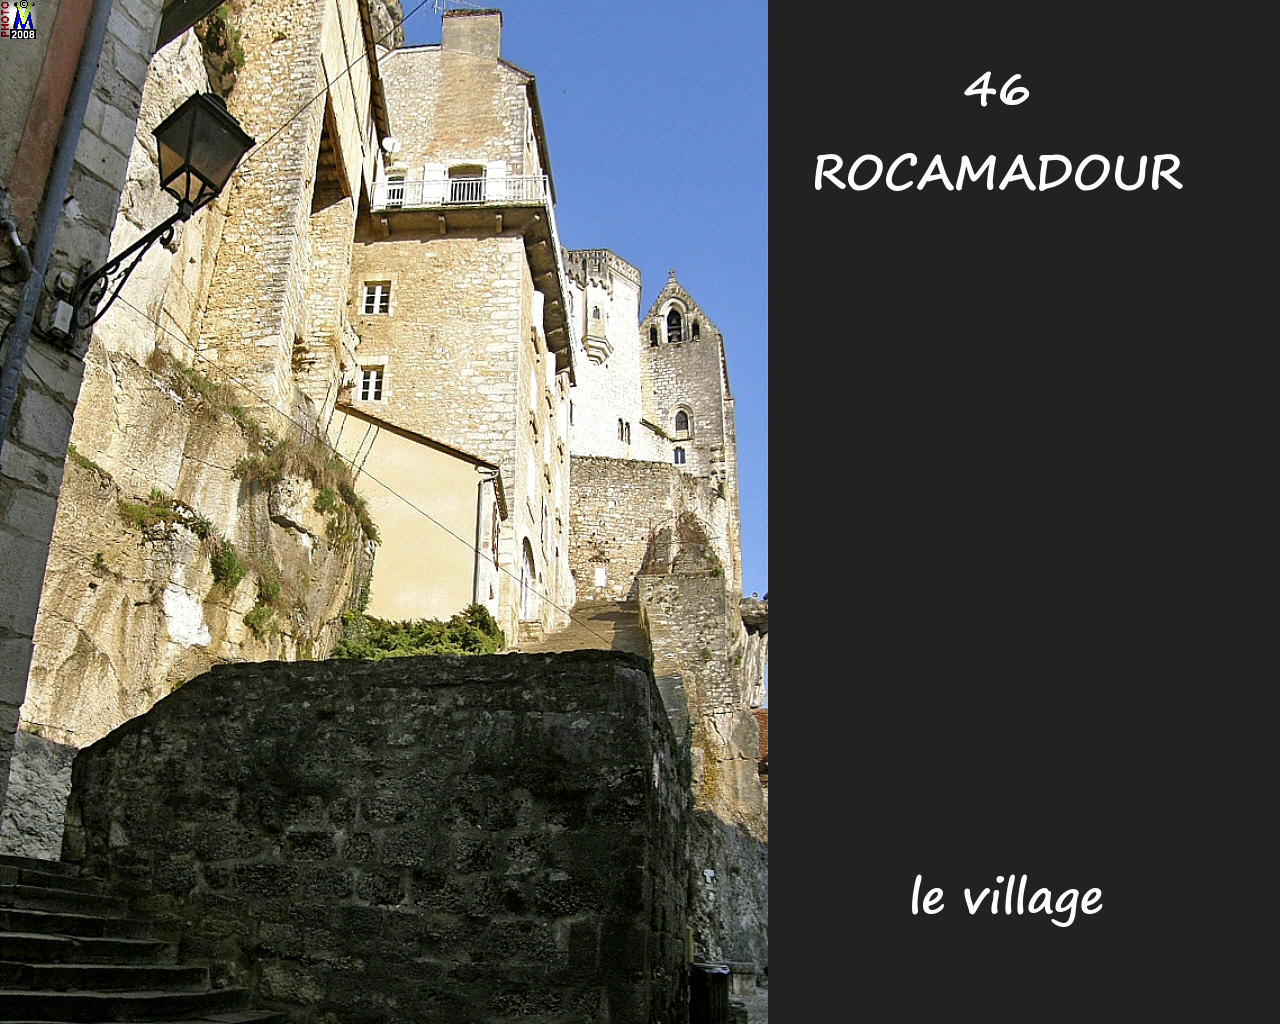 46ROCAMADOUR_village_118.jpg